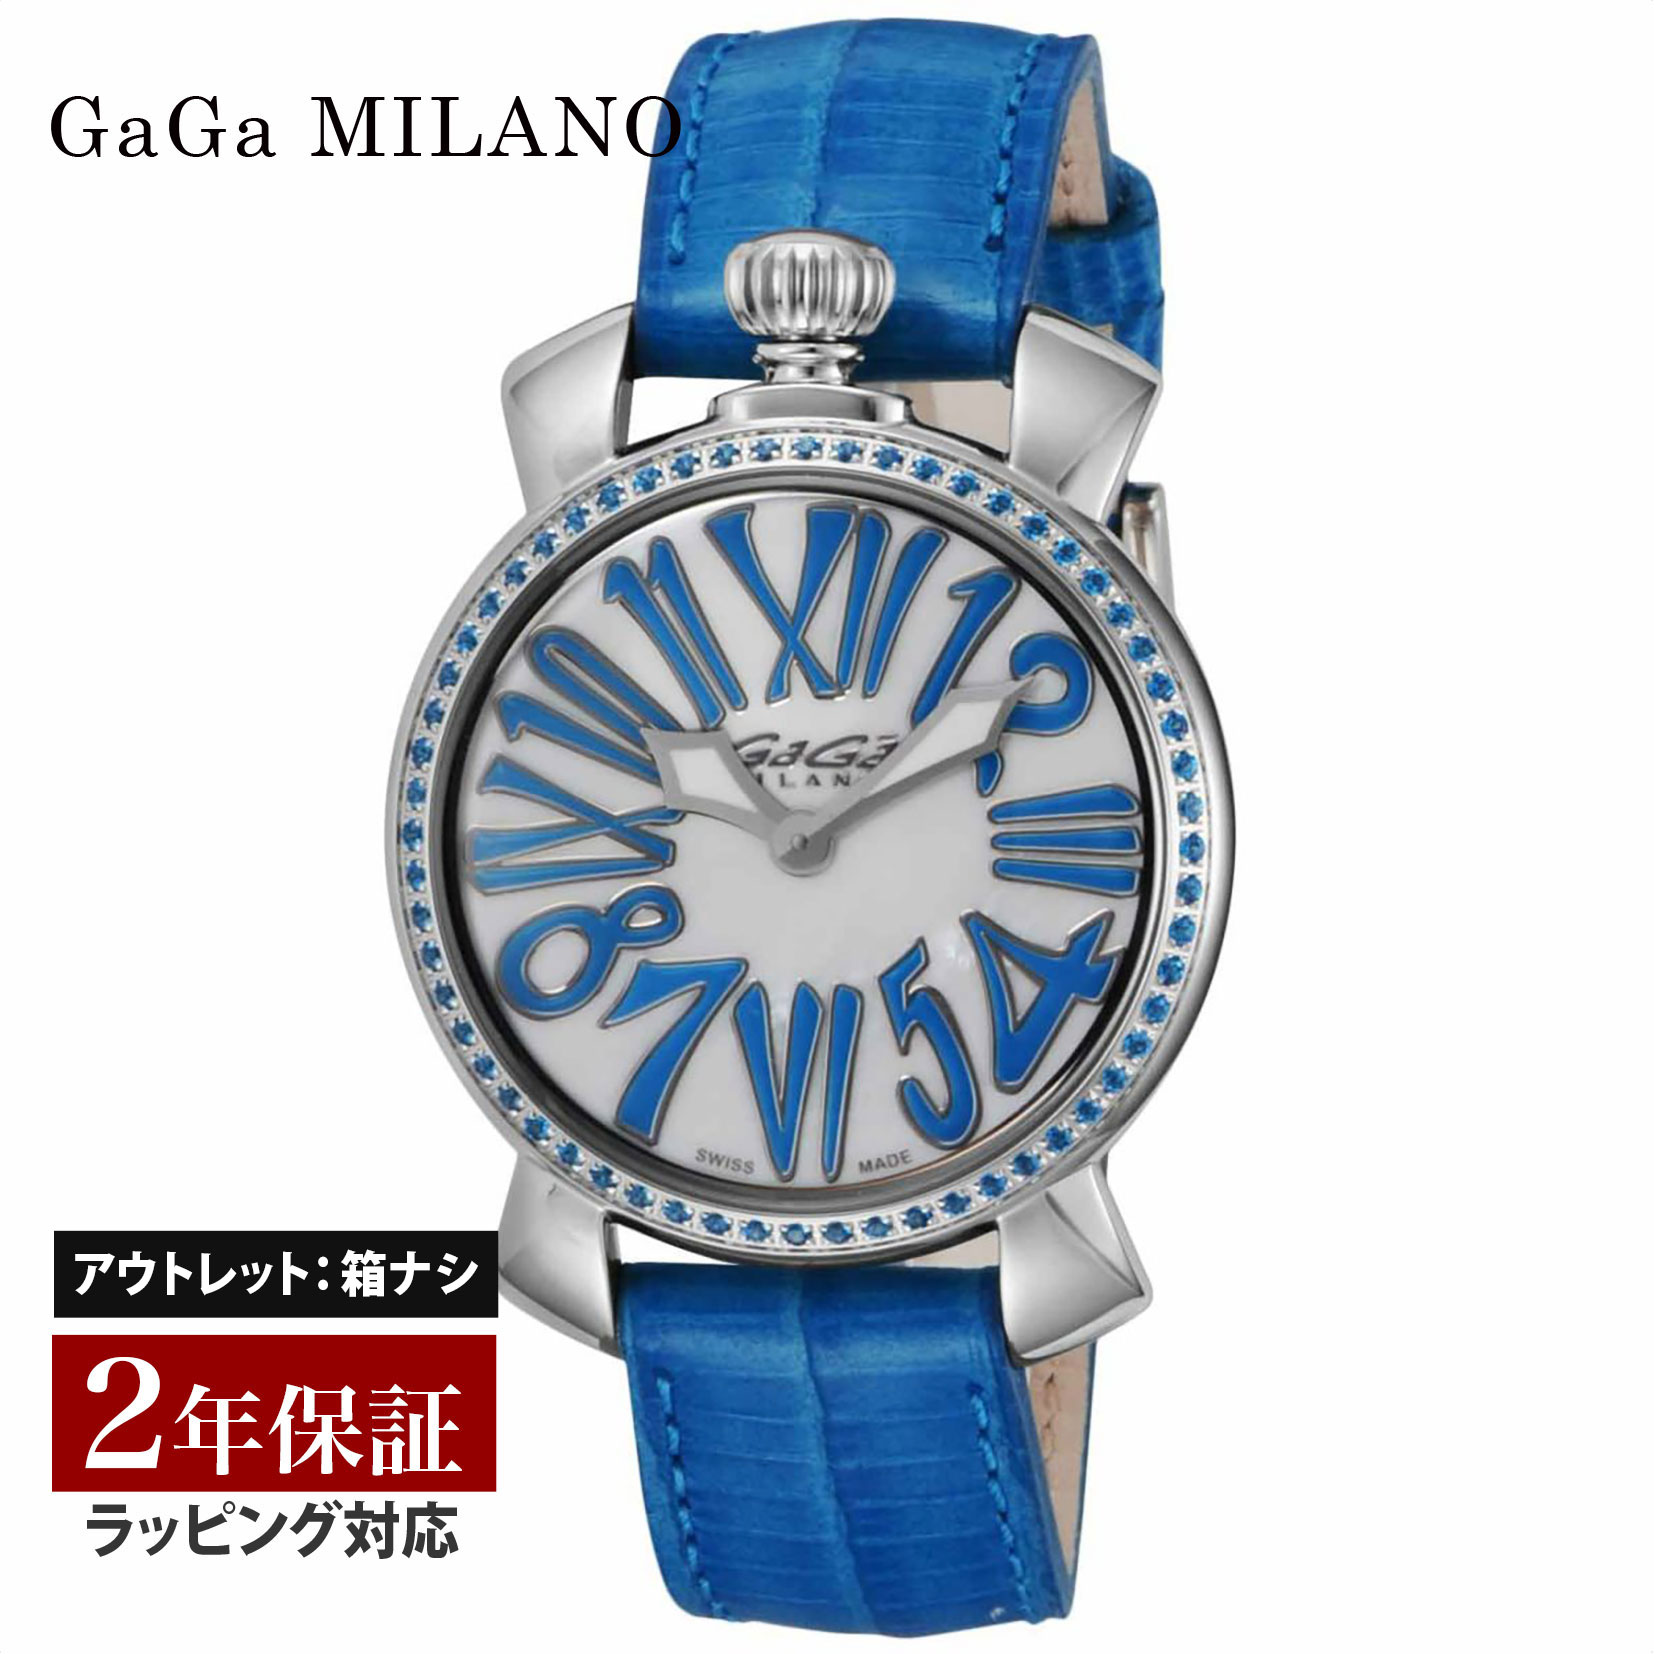 【クリアランスSALE】 GaGaMILAN ガガミラノ MANUALE35MMSTONES クォーツ レディース ホワイト 6025.04 腕時計 高級腕時計 ブランド 